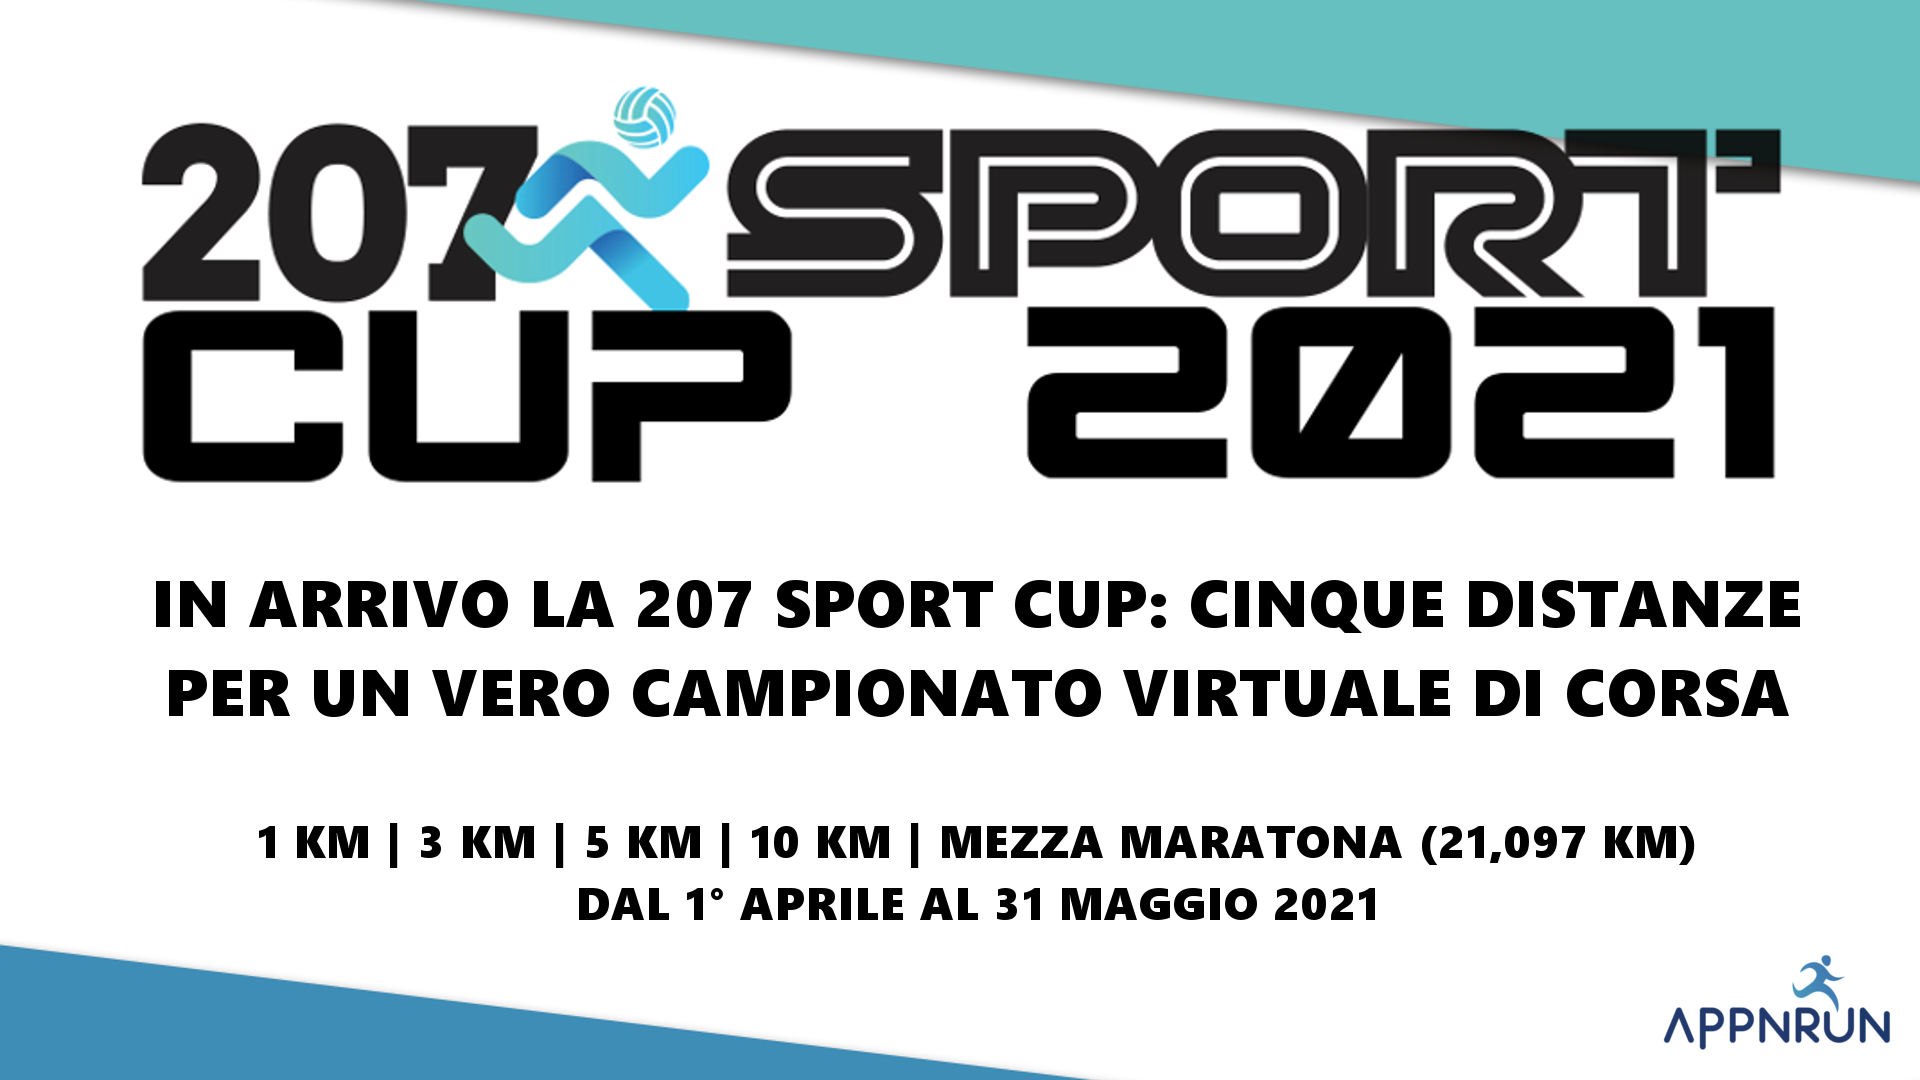 In arrivo la 207 Sport Cup: cinque distanze per un vero campionato virtuale di corsa